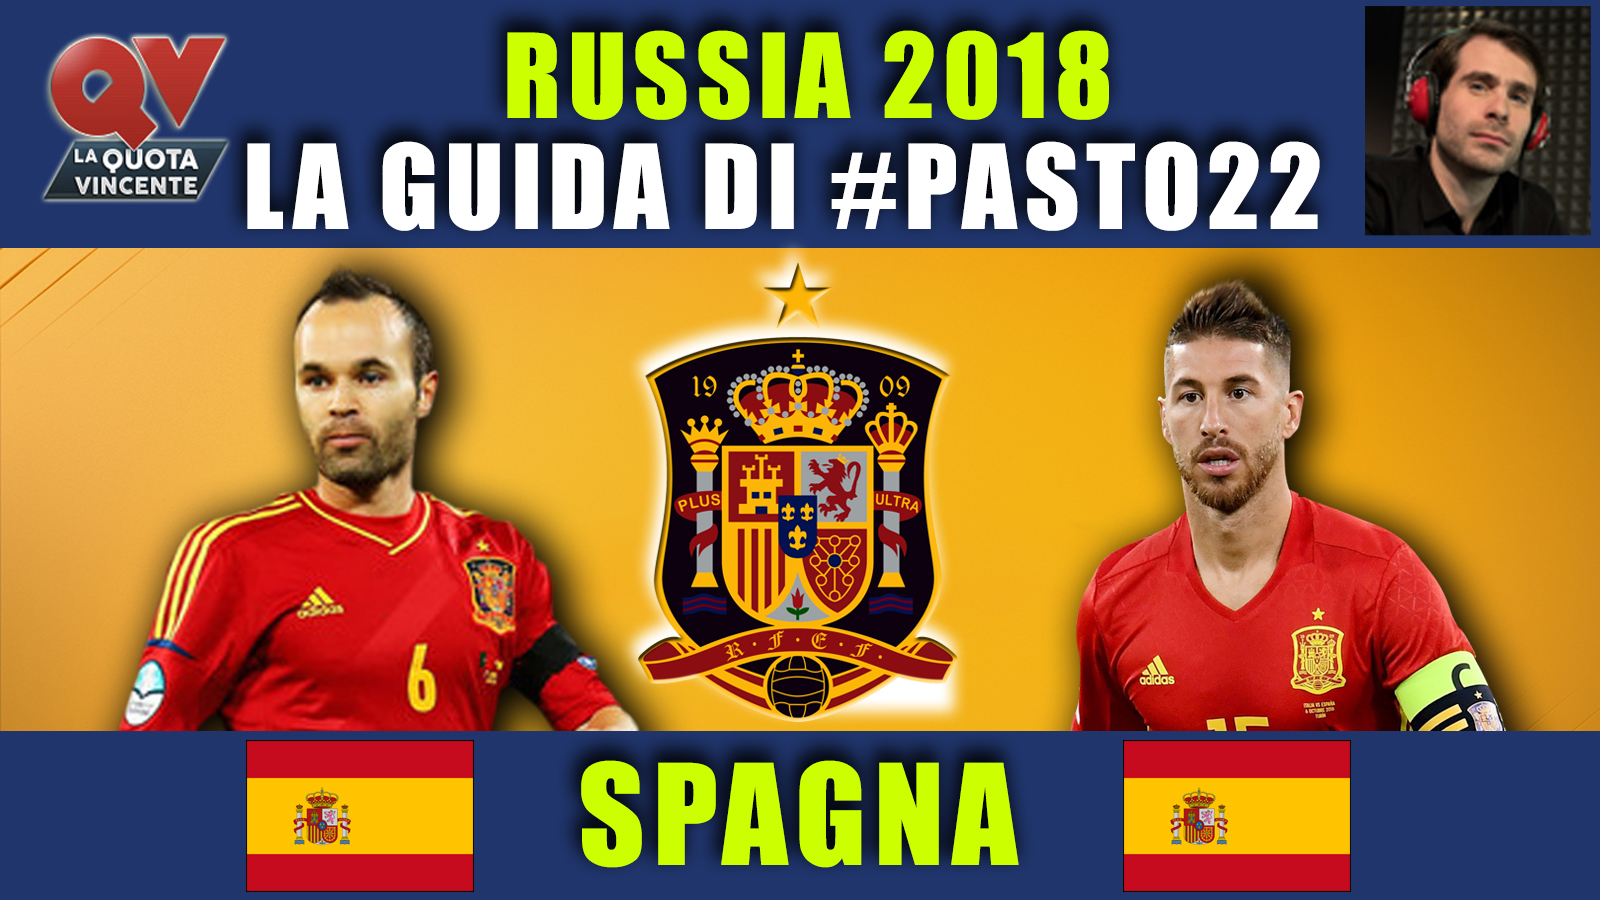 Guida Mondiali Russia 2018 Spagna